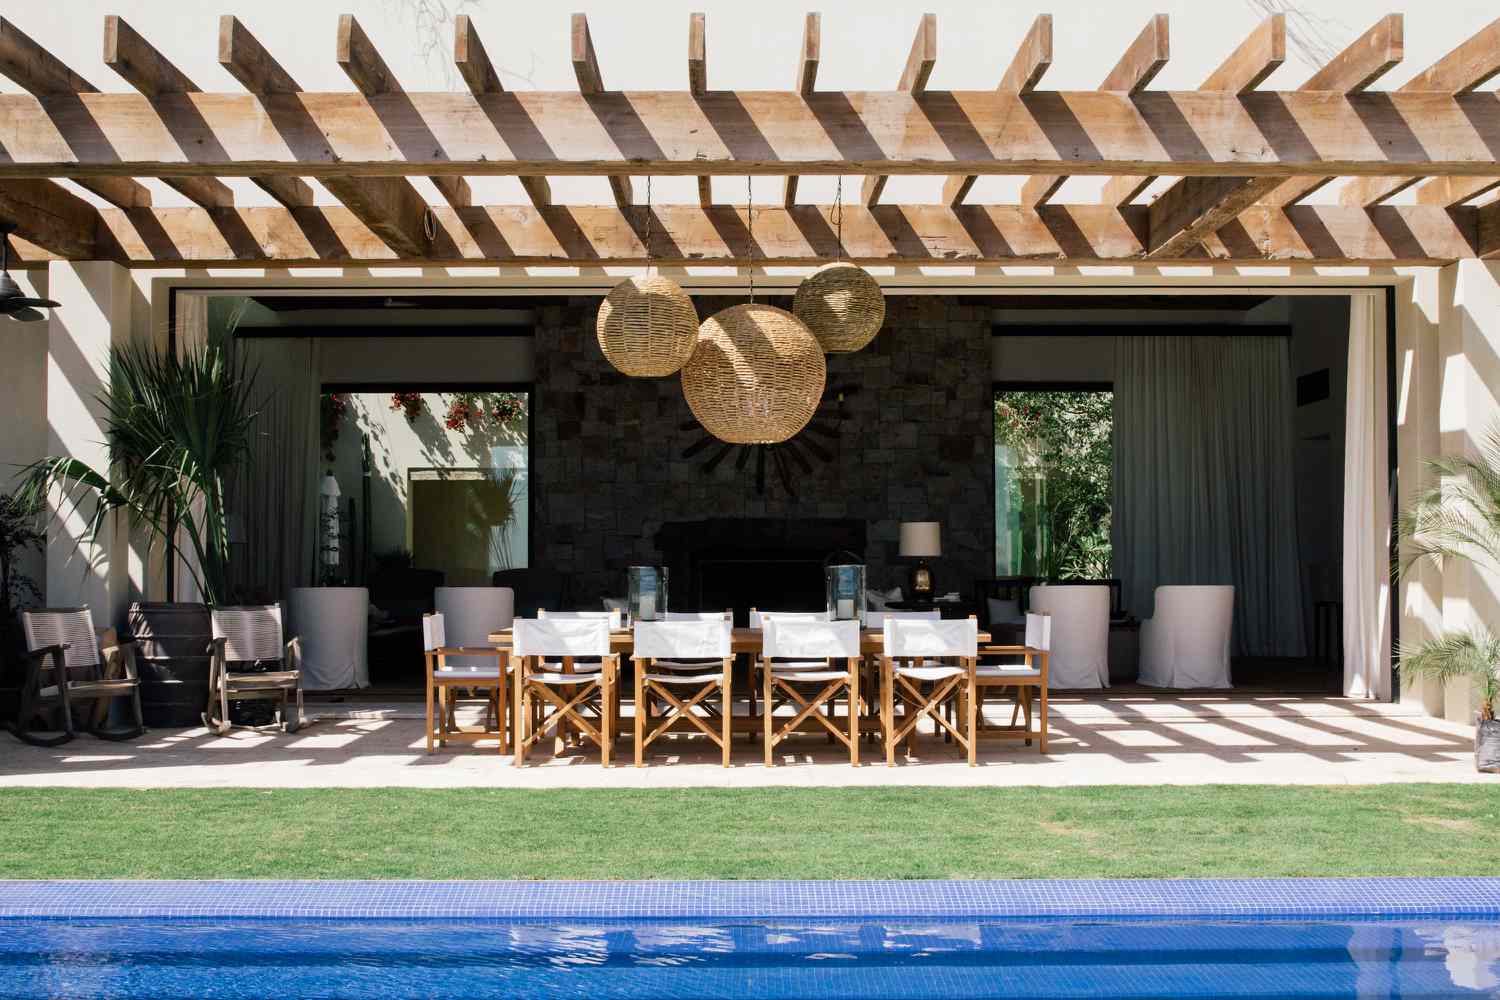 El diseñador de interiores Chris Barrett, afincado en Los Ángeles, diseñó este espacio al aire libre, que cuenta con múltiples zonas para diferentes propósitos